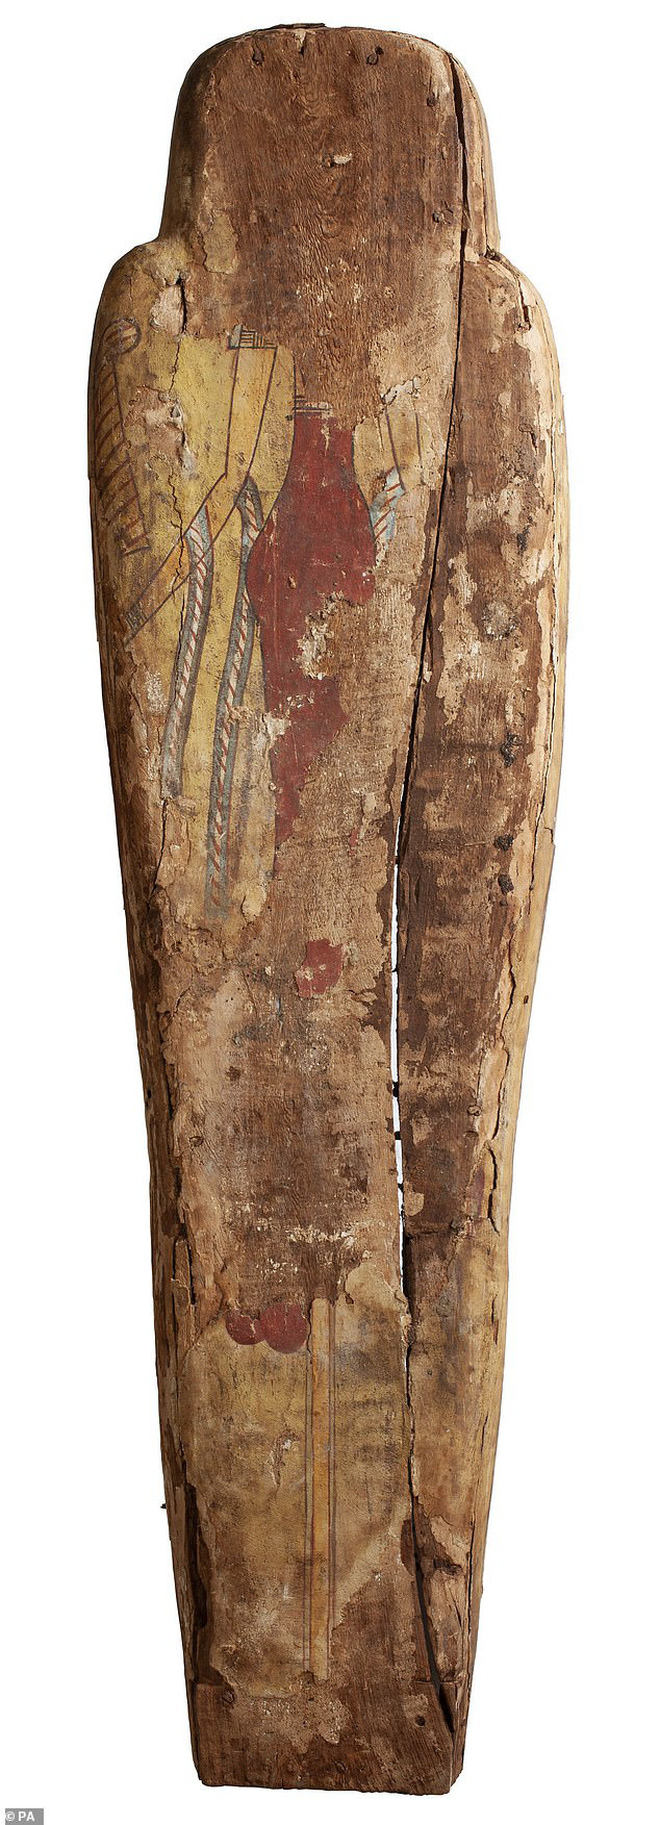 Đưa xác ướp 3.000 năm tuổi của công chúa Ai Cập ra khỏi quan tài, phát hiện bức chân dung bí ẩn cùng hàng loạt câu hỏi chưa có lời giải đáp - Ảnh 3.